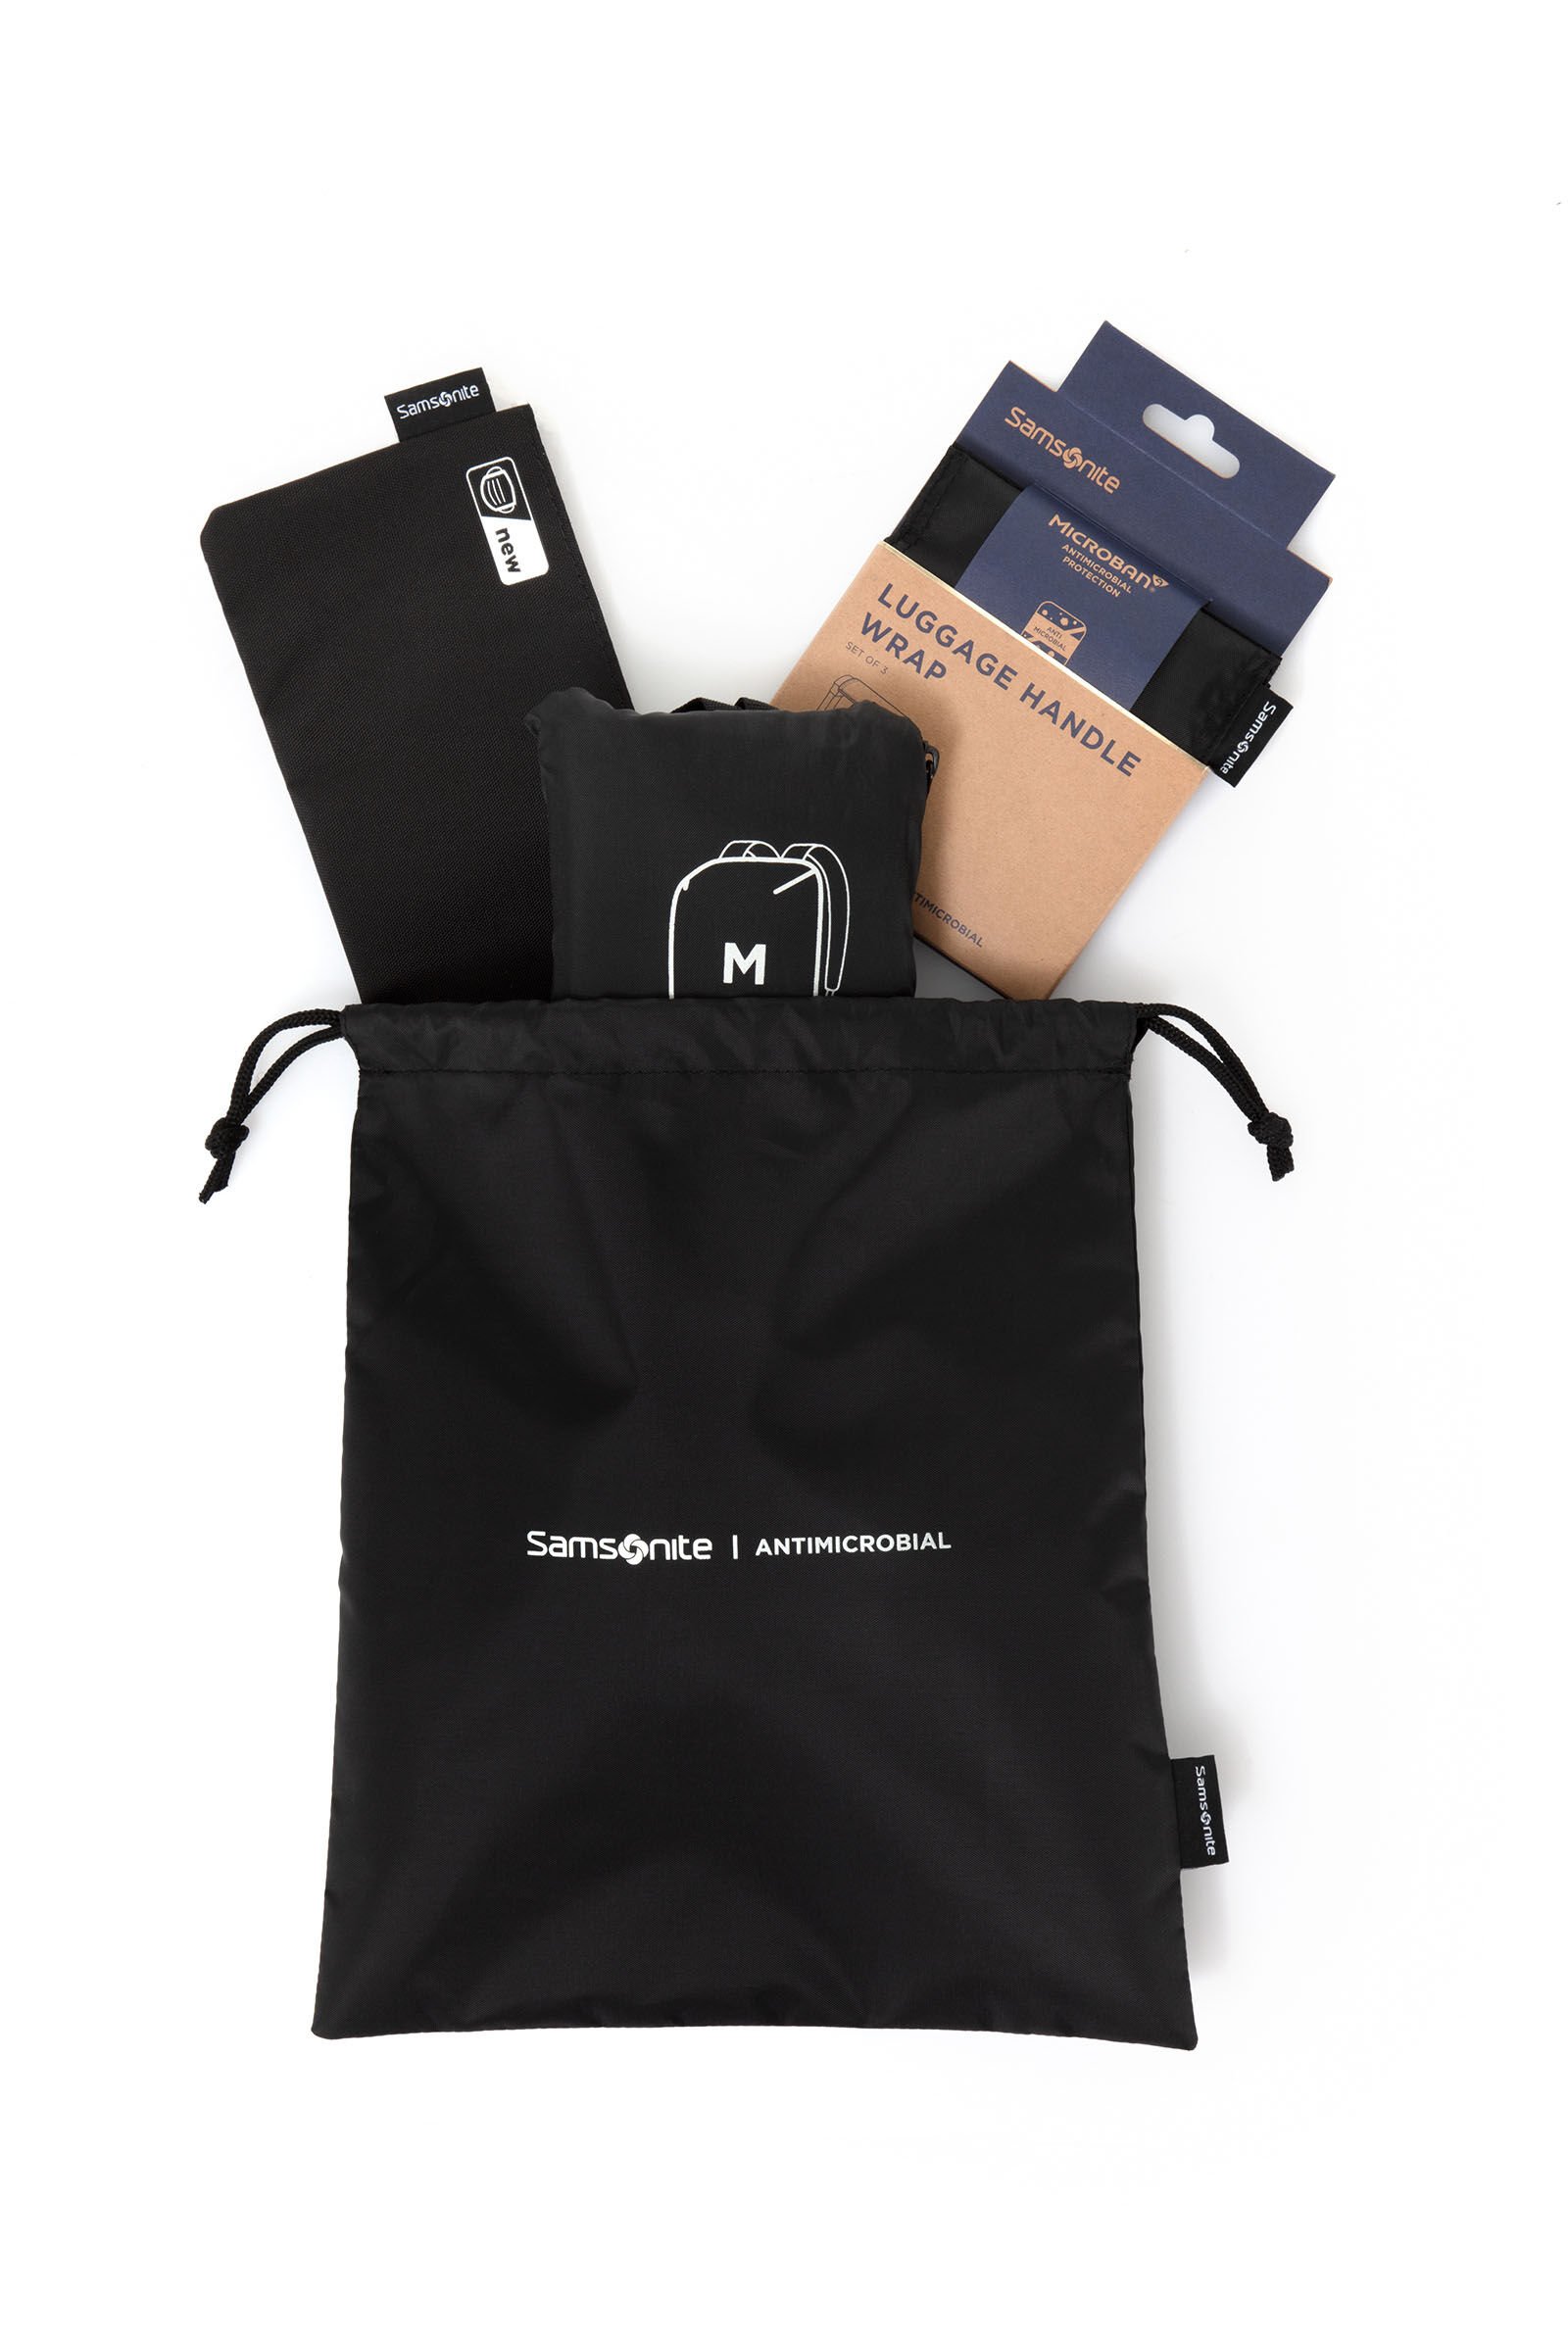 Samsonite Travel Essential Excursion Bag